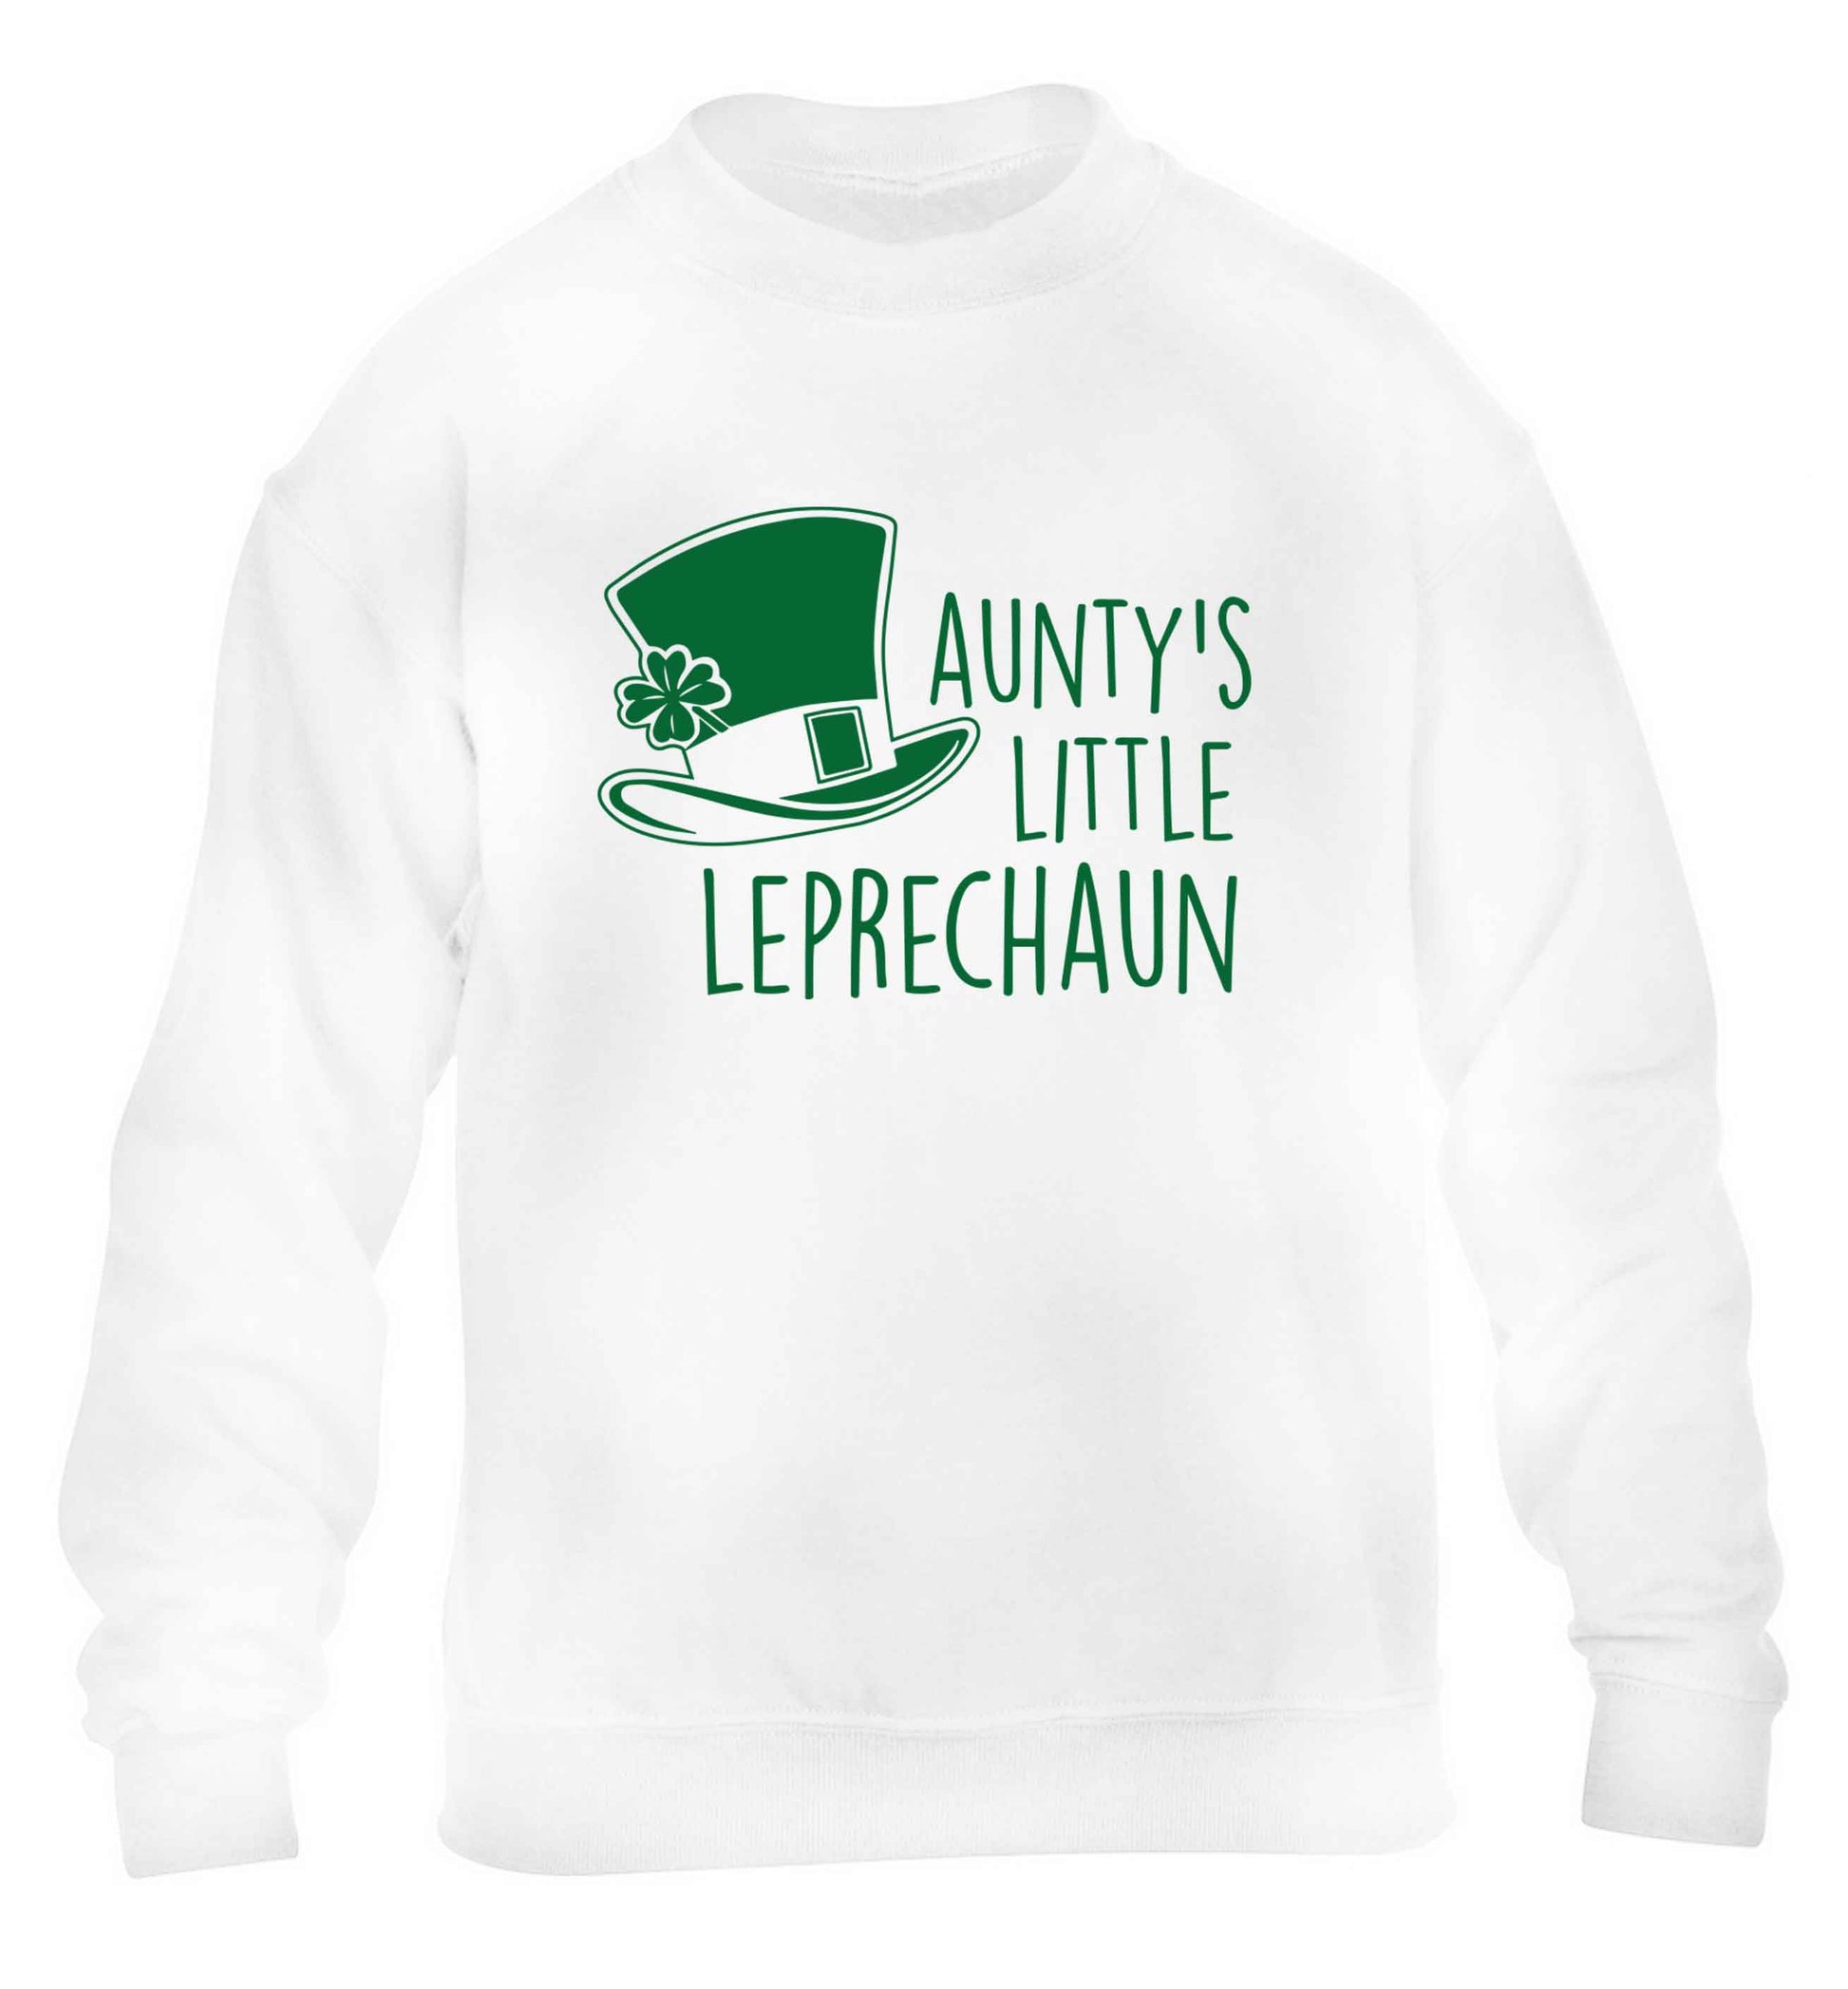 Aunty's little leprechaun children's white sweater 12-13 Years